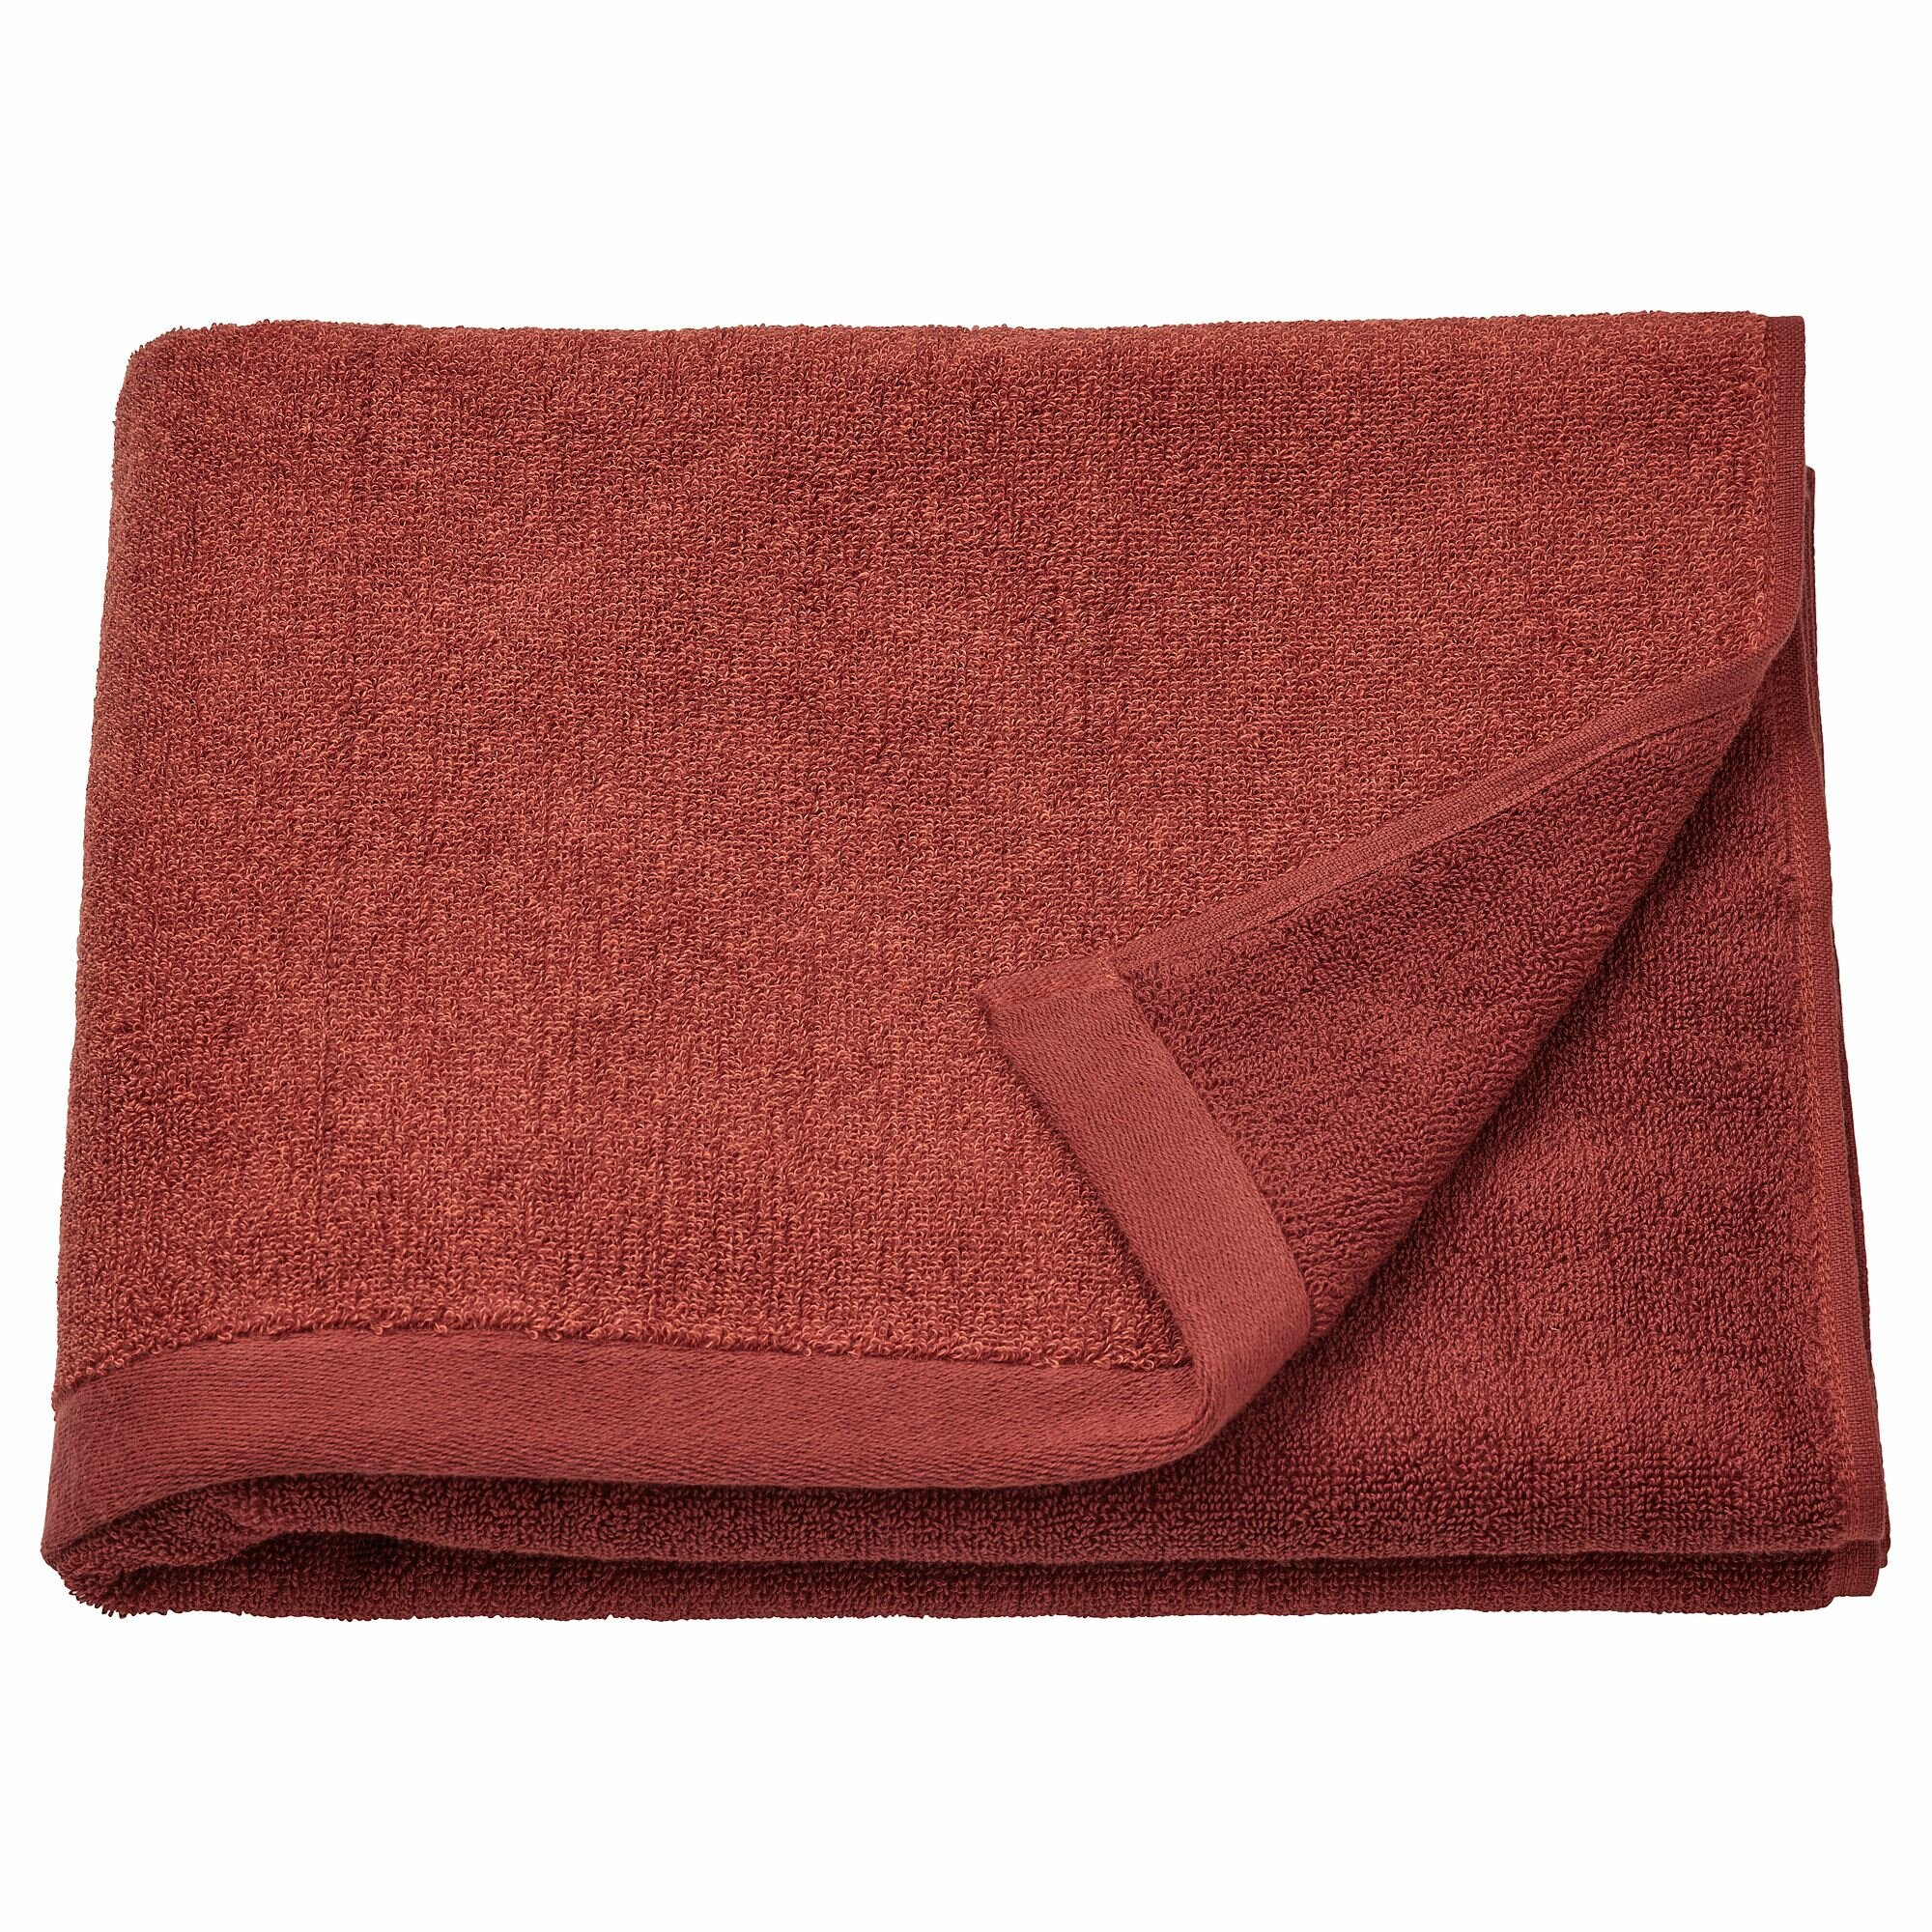 Икея / IKEA HIMLEAN, химлеан, банное полотенце, красный, 70x140 см